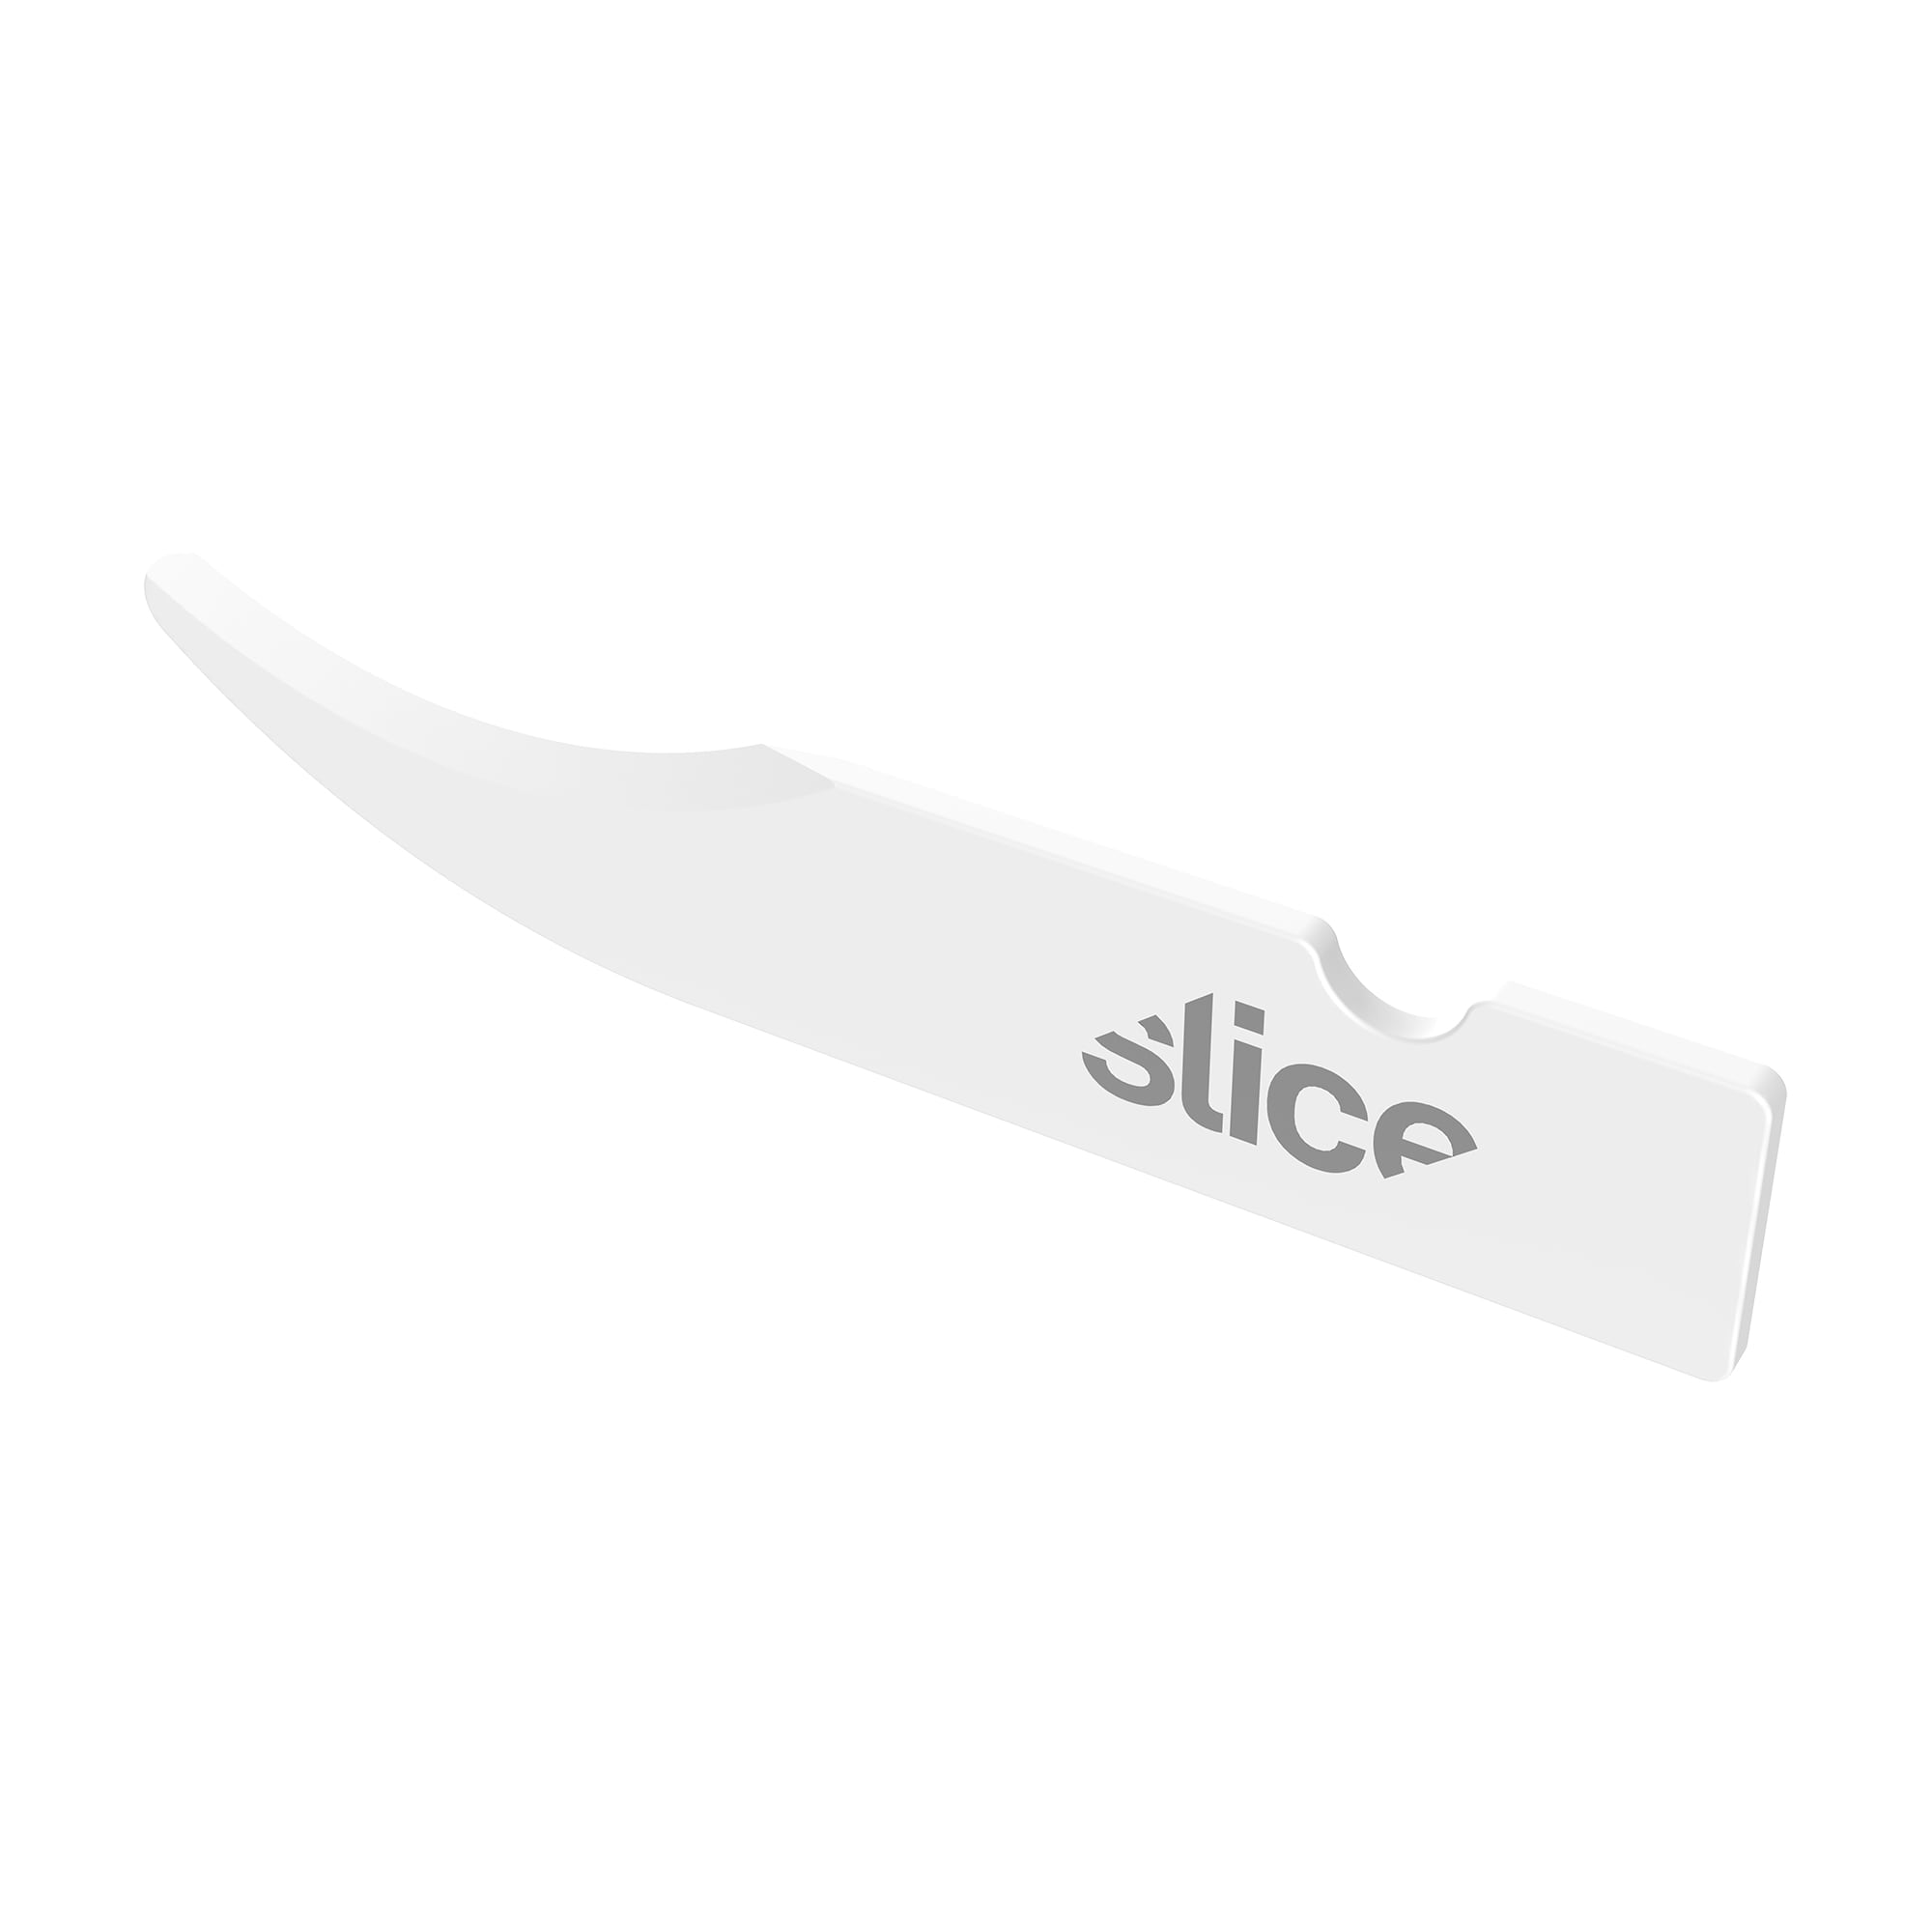 Slice Manual Seam Ripper